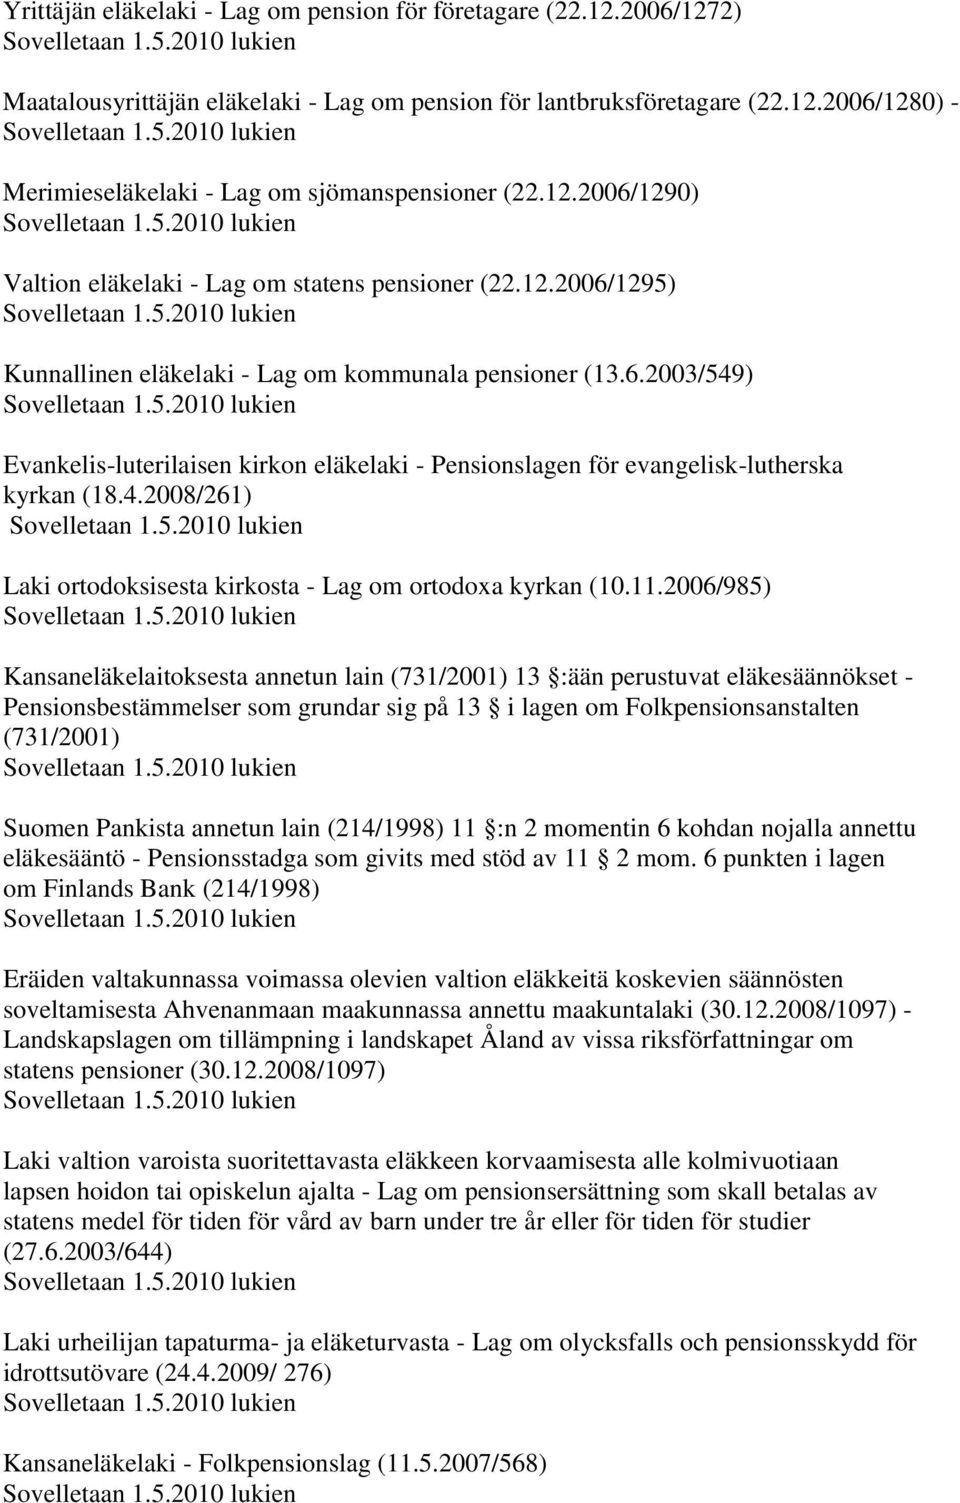 2) Maatalousyrittäjän eläkelaki - Lag om pension för lantbruksföretagare (22.12.